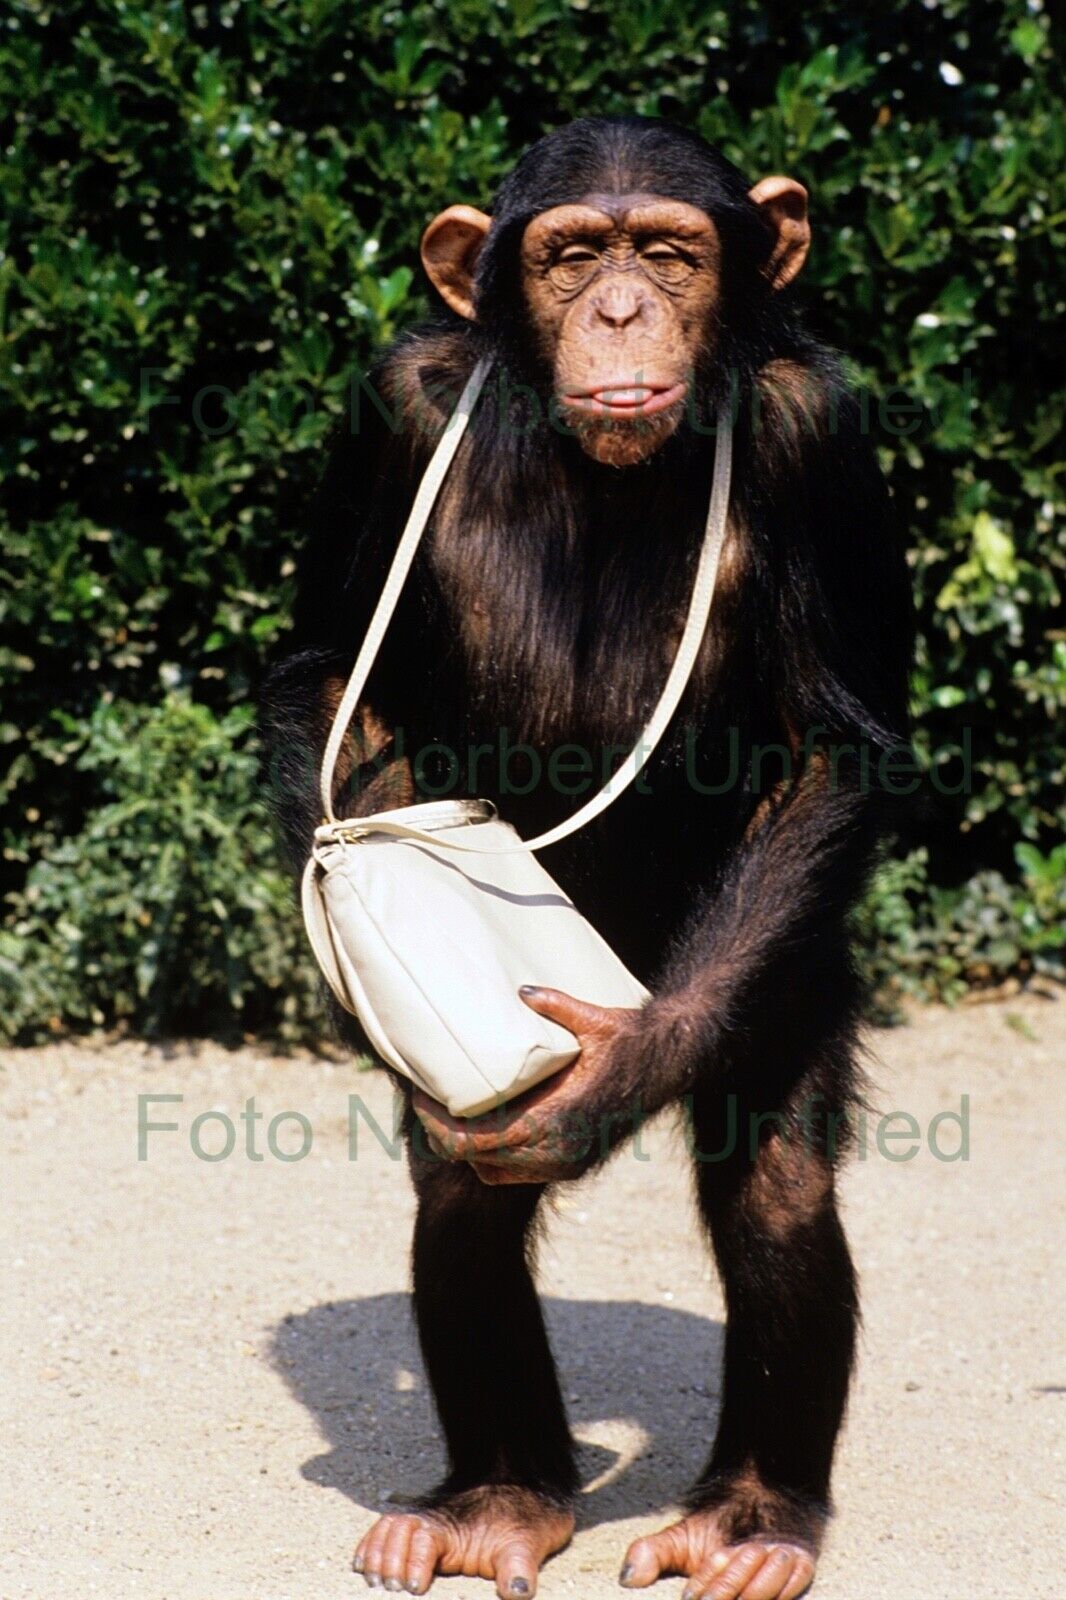 Tierpark Hagenbeck - Schimpanse 10 x 15 cm Foto ohne Autogramm (Star-2